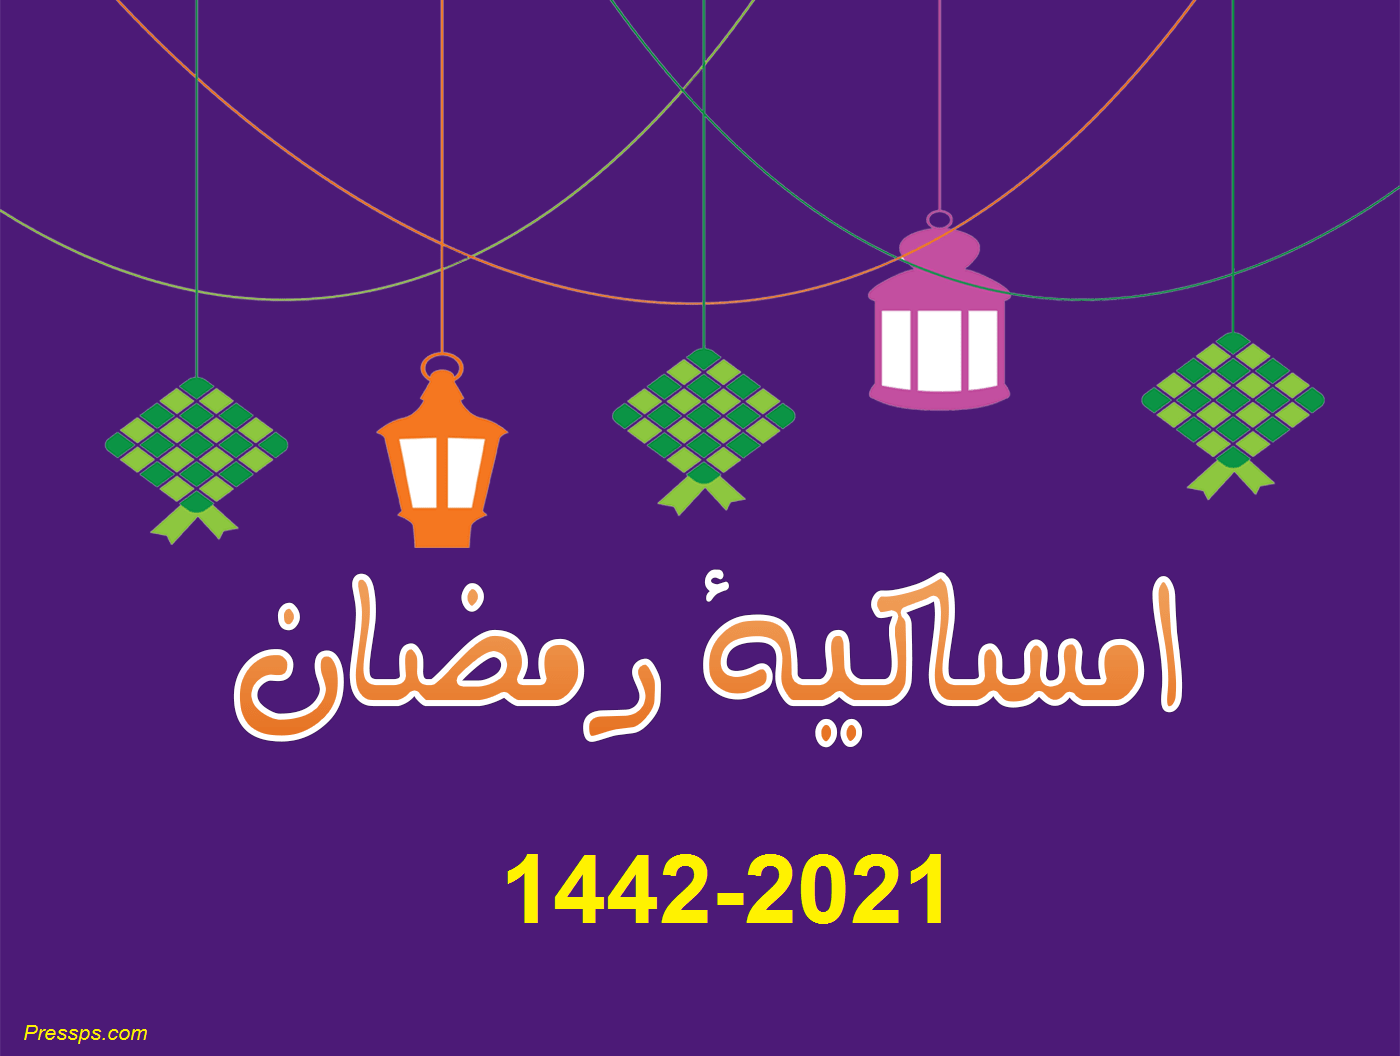 امساكية شهر رمضان 2021 لدولة الكويت طالع تواقيت الصلاة وكالة سوا الإخبارية